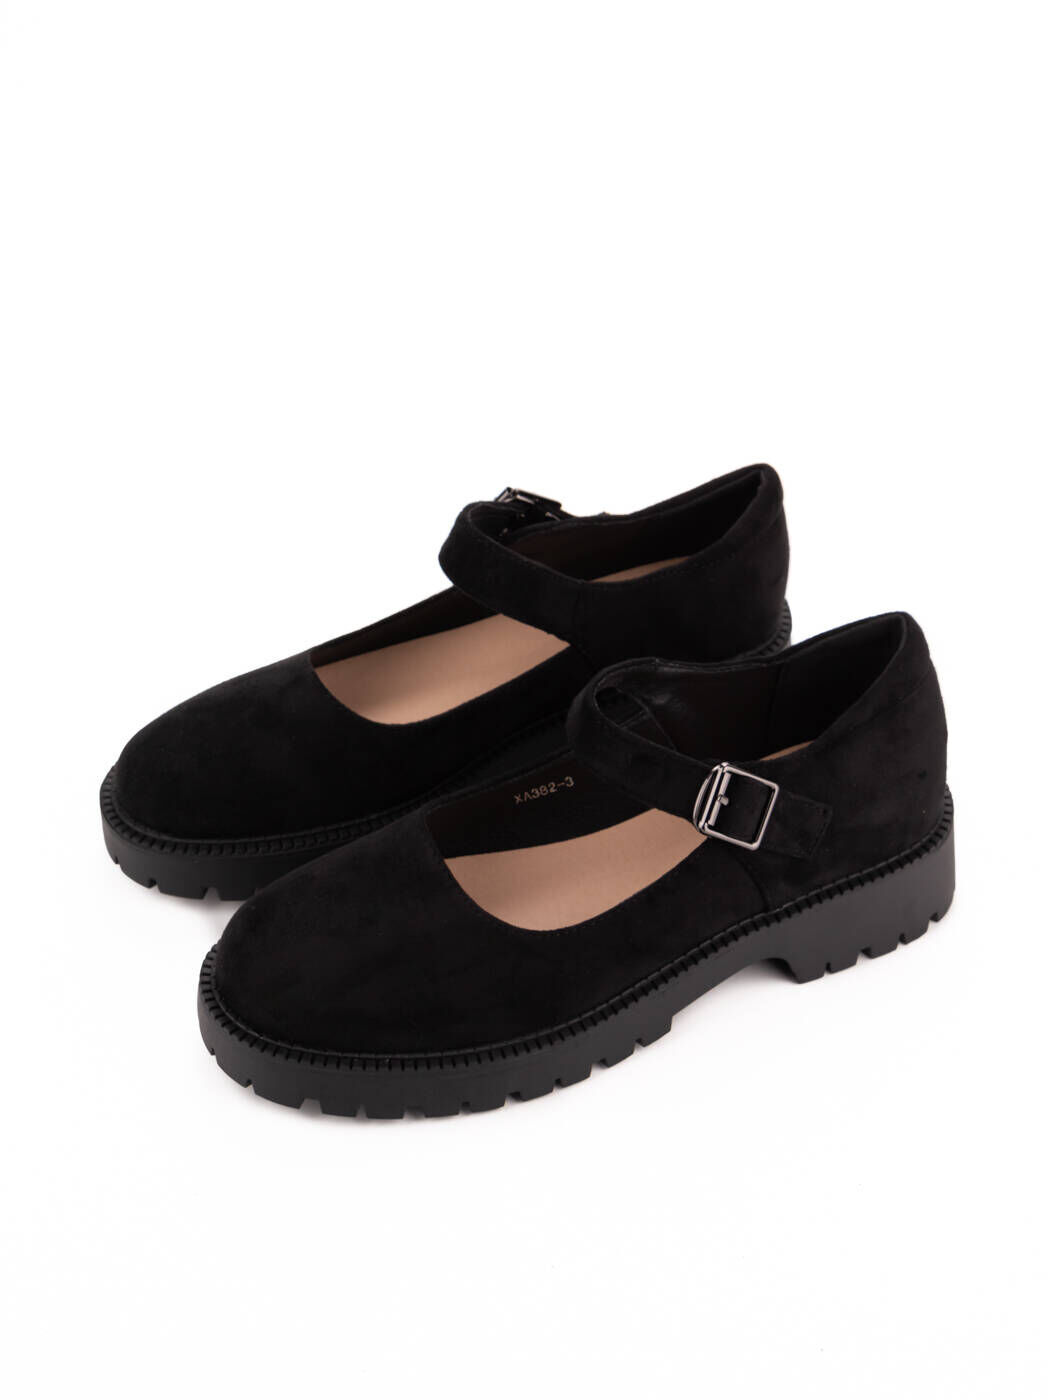 Туфлі жіночі чорні екозамша демісезон 3М